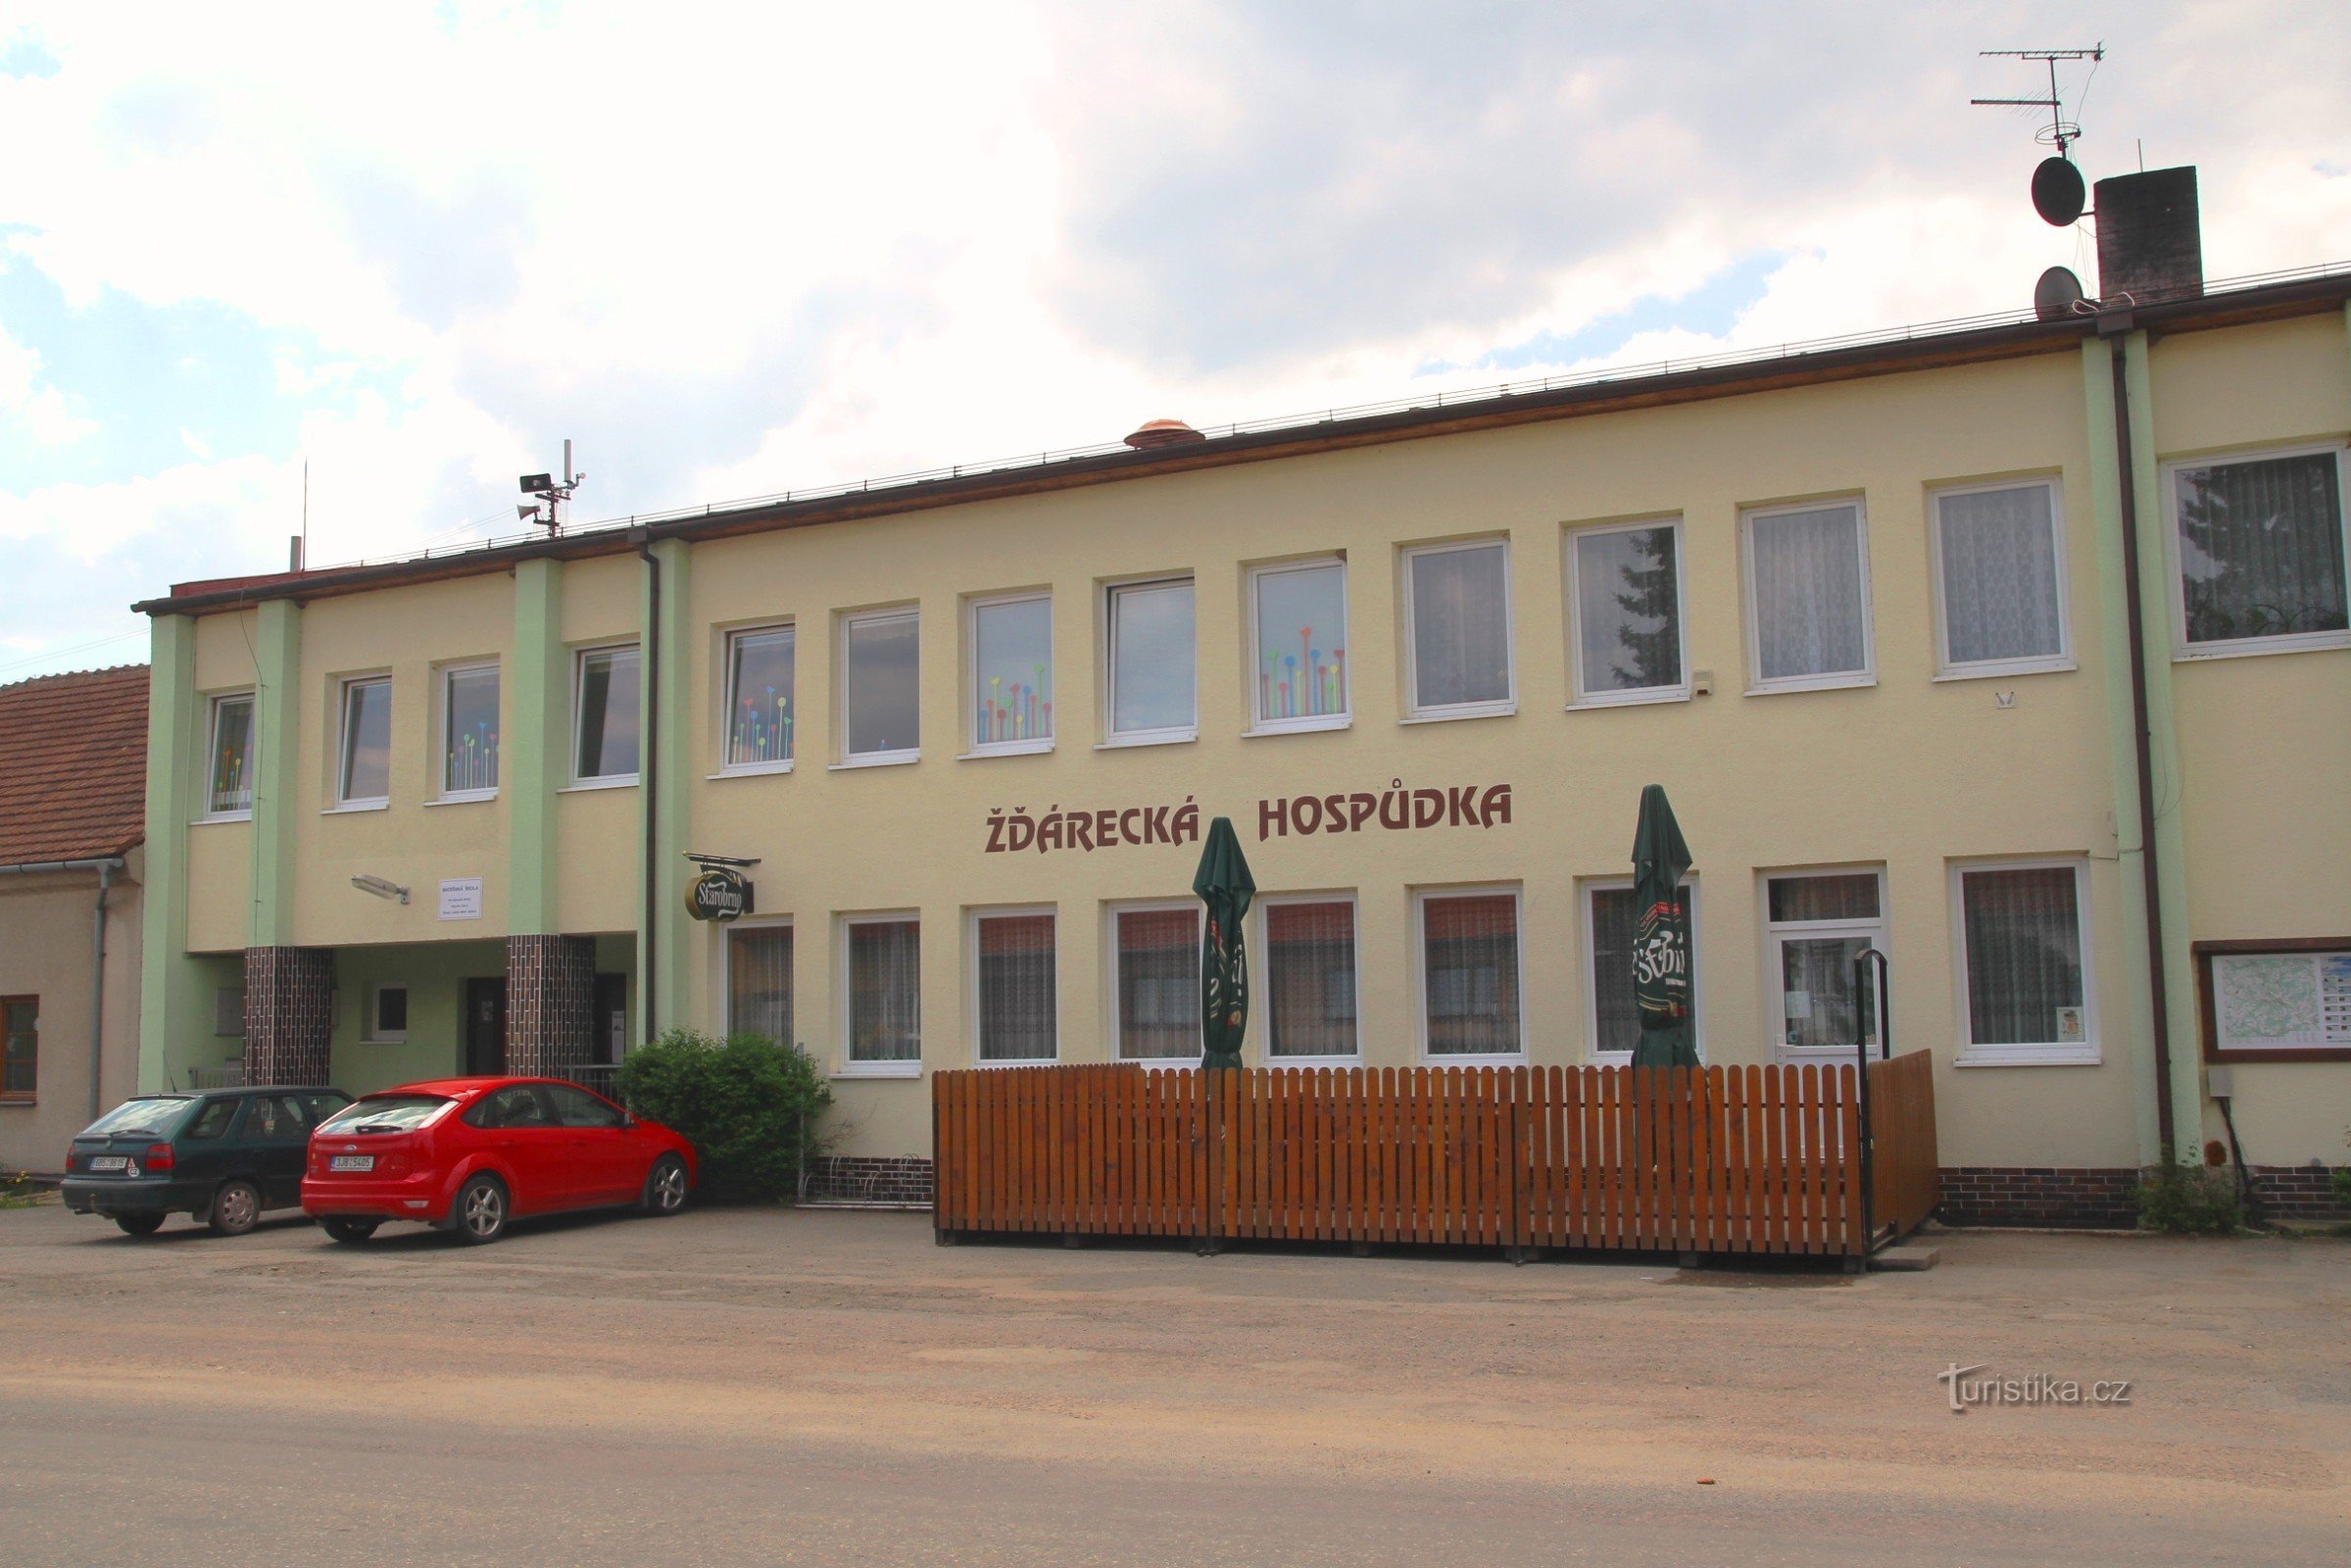 Žďárecká pub ligger i nærheden af ​​busstoppestedet